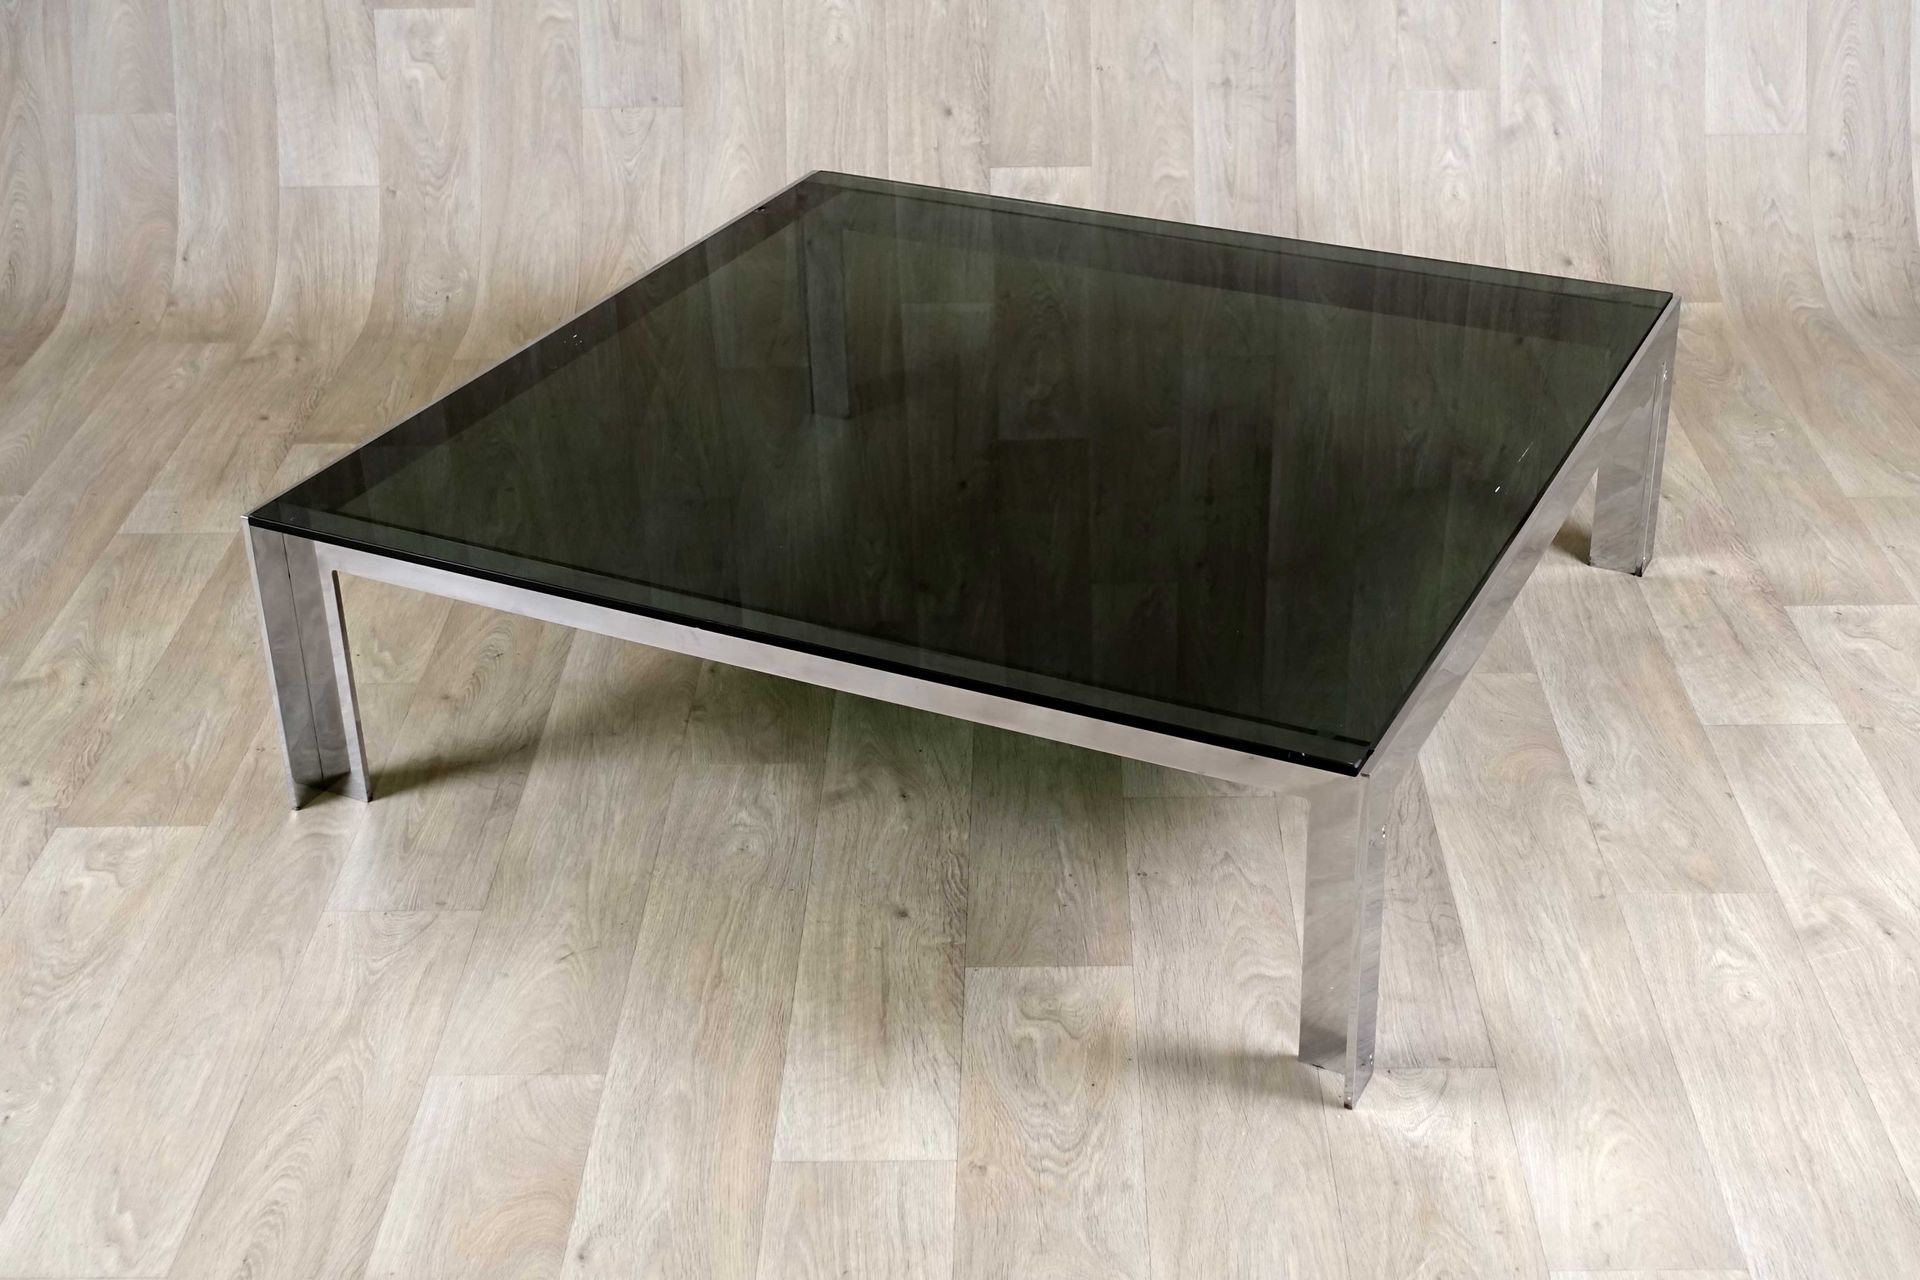 Table de Salon. 
Estante de cristal ahumado y base de metal cromado. Dimensiones&hellip;